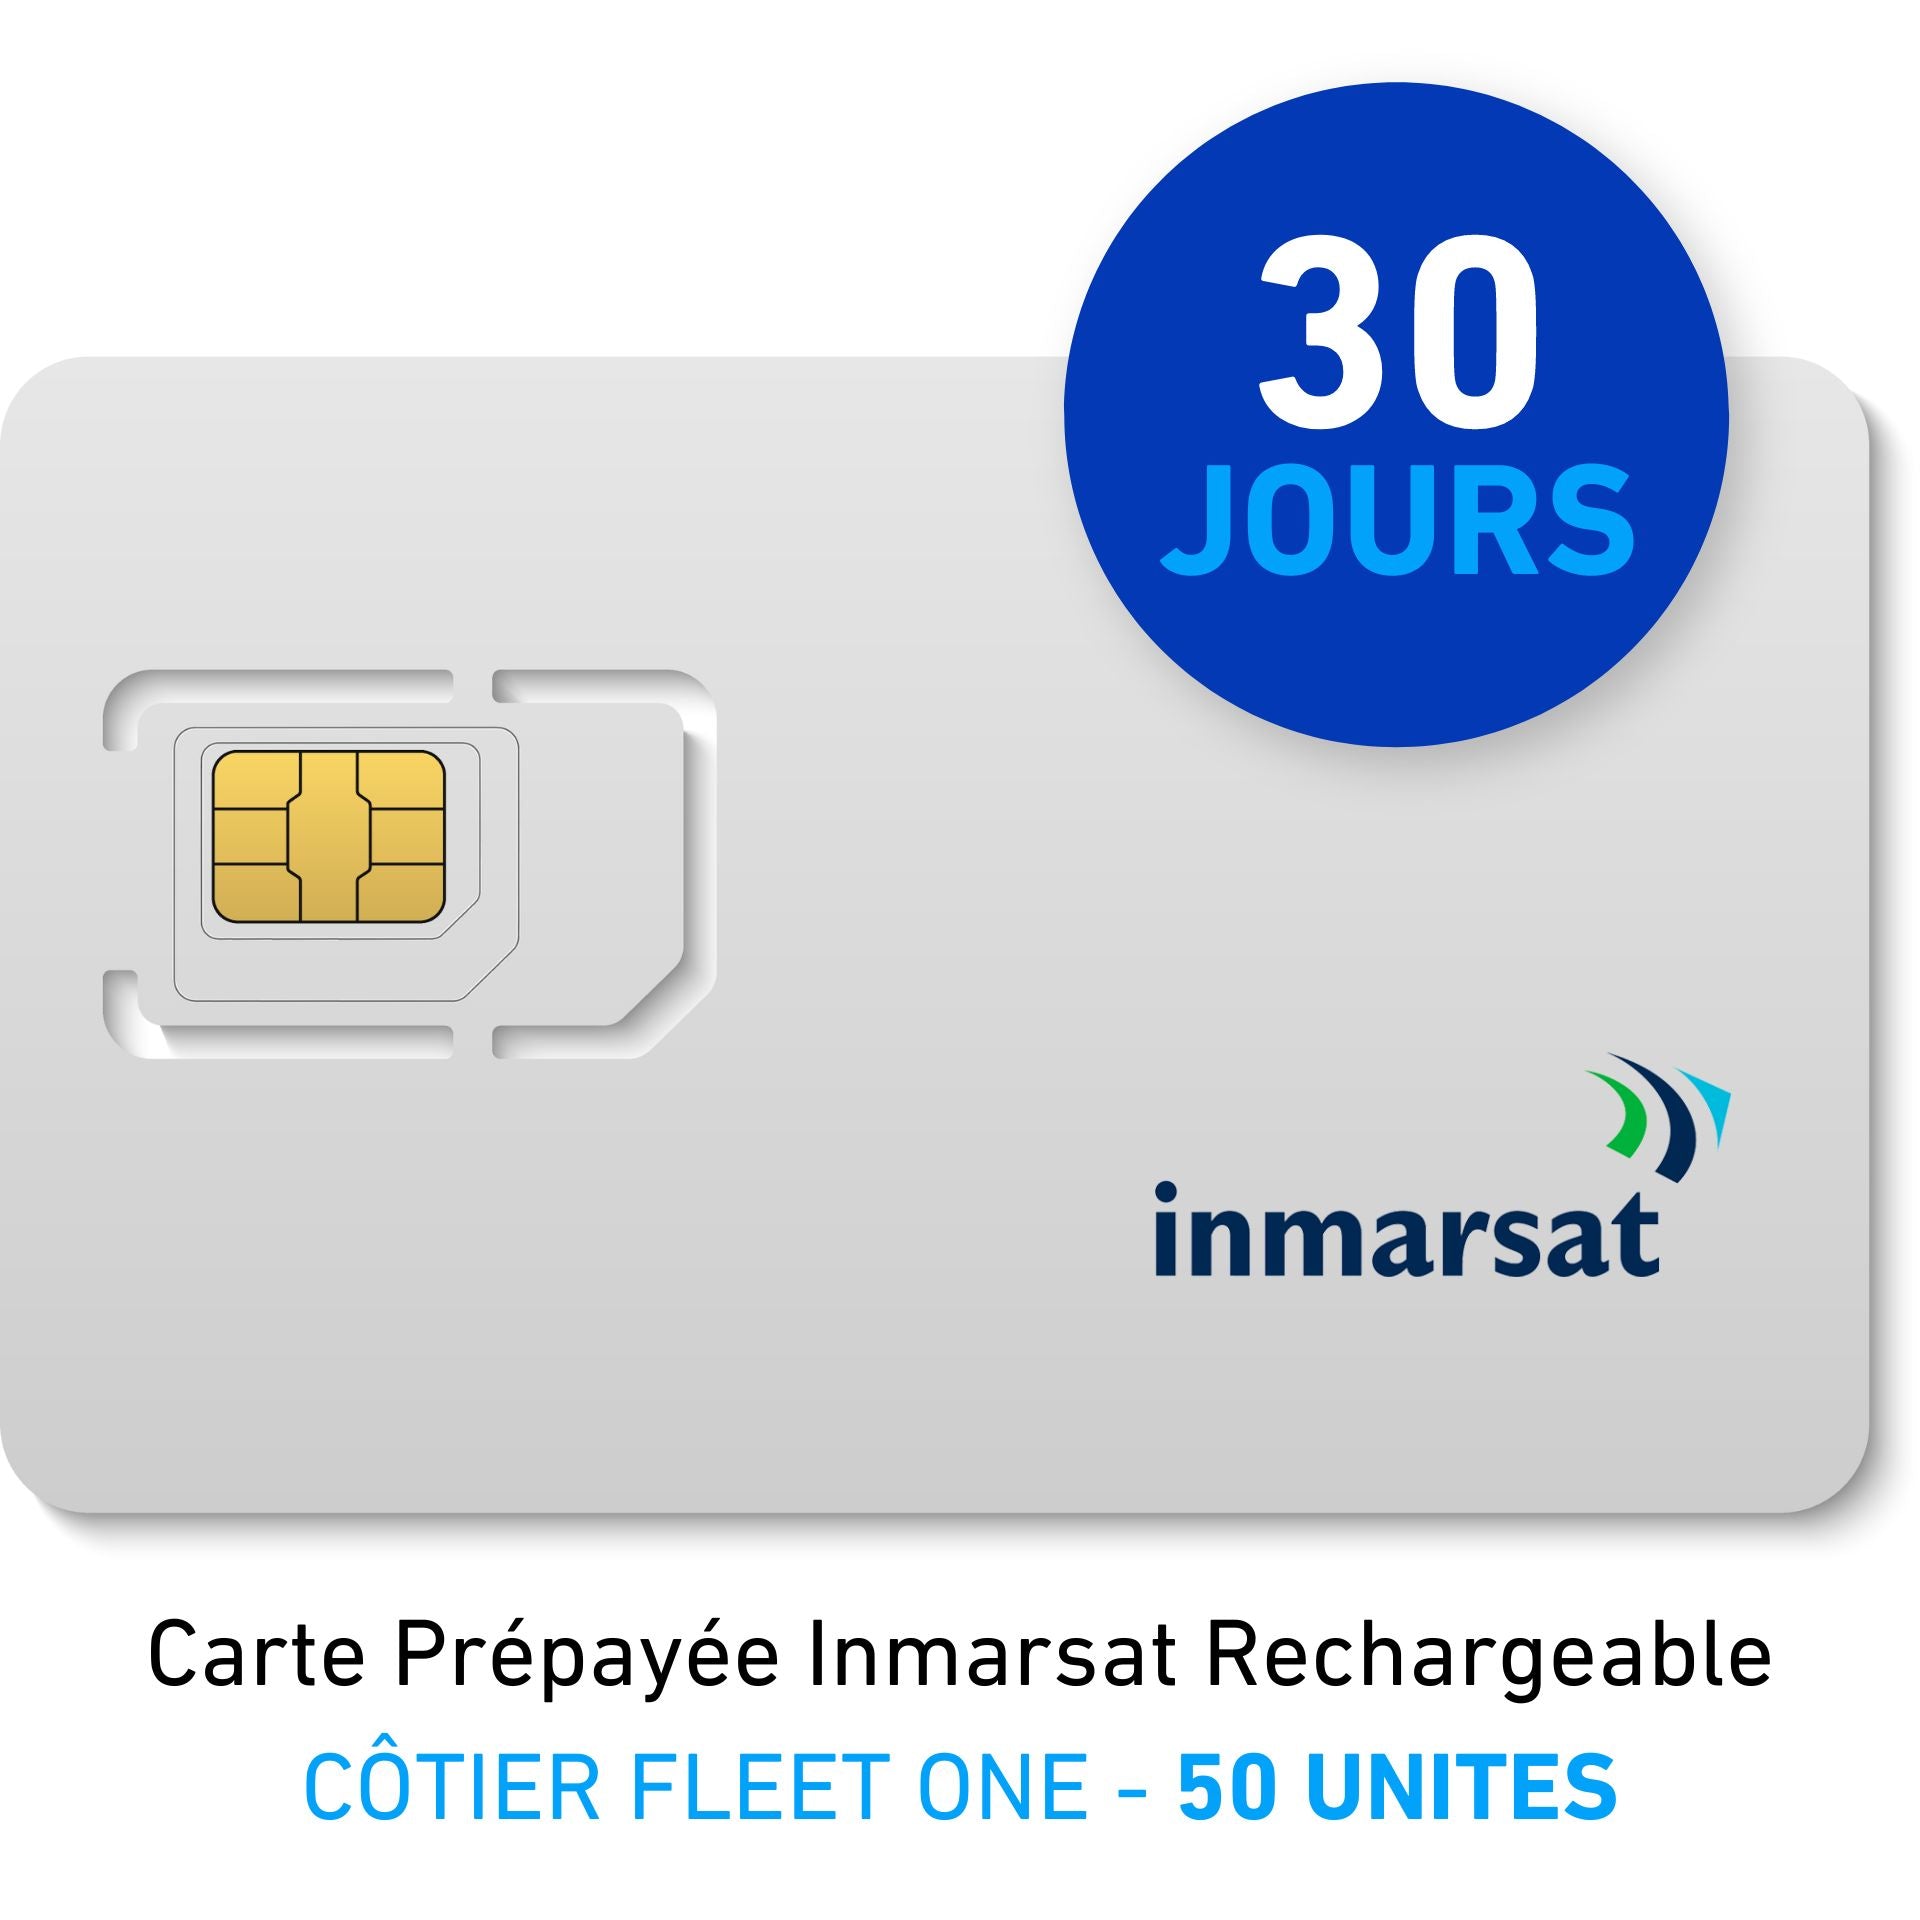 INMARSAT Prepaid-Karte Aufladbar CÔTIER FLEET ONE - 50 UNITES - 30 JOURS